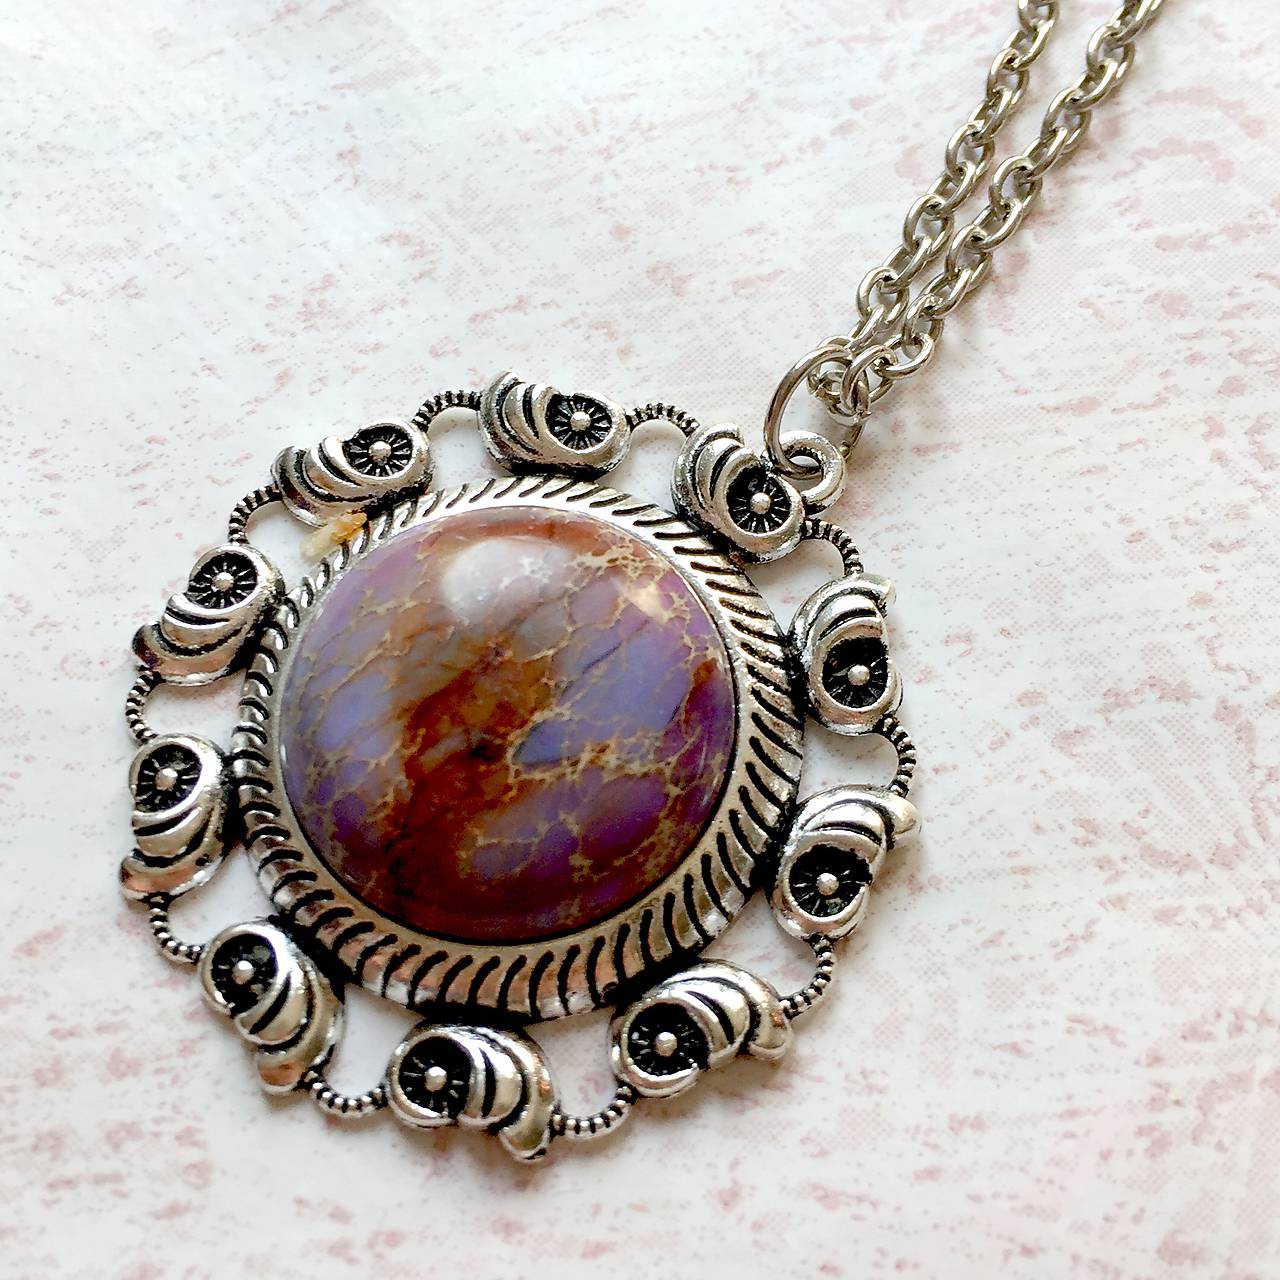 Violet Ocean Jasper Necklace / Výrazný náhrdelník s fialovým jaspisom variscitom